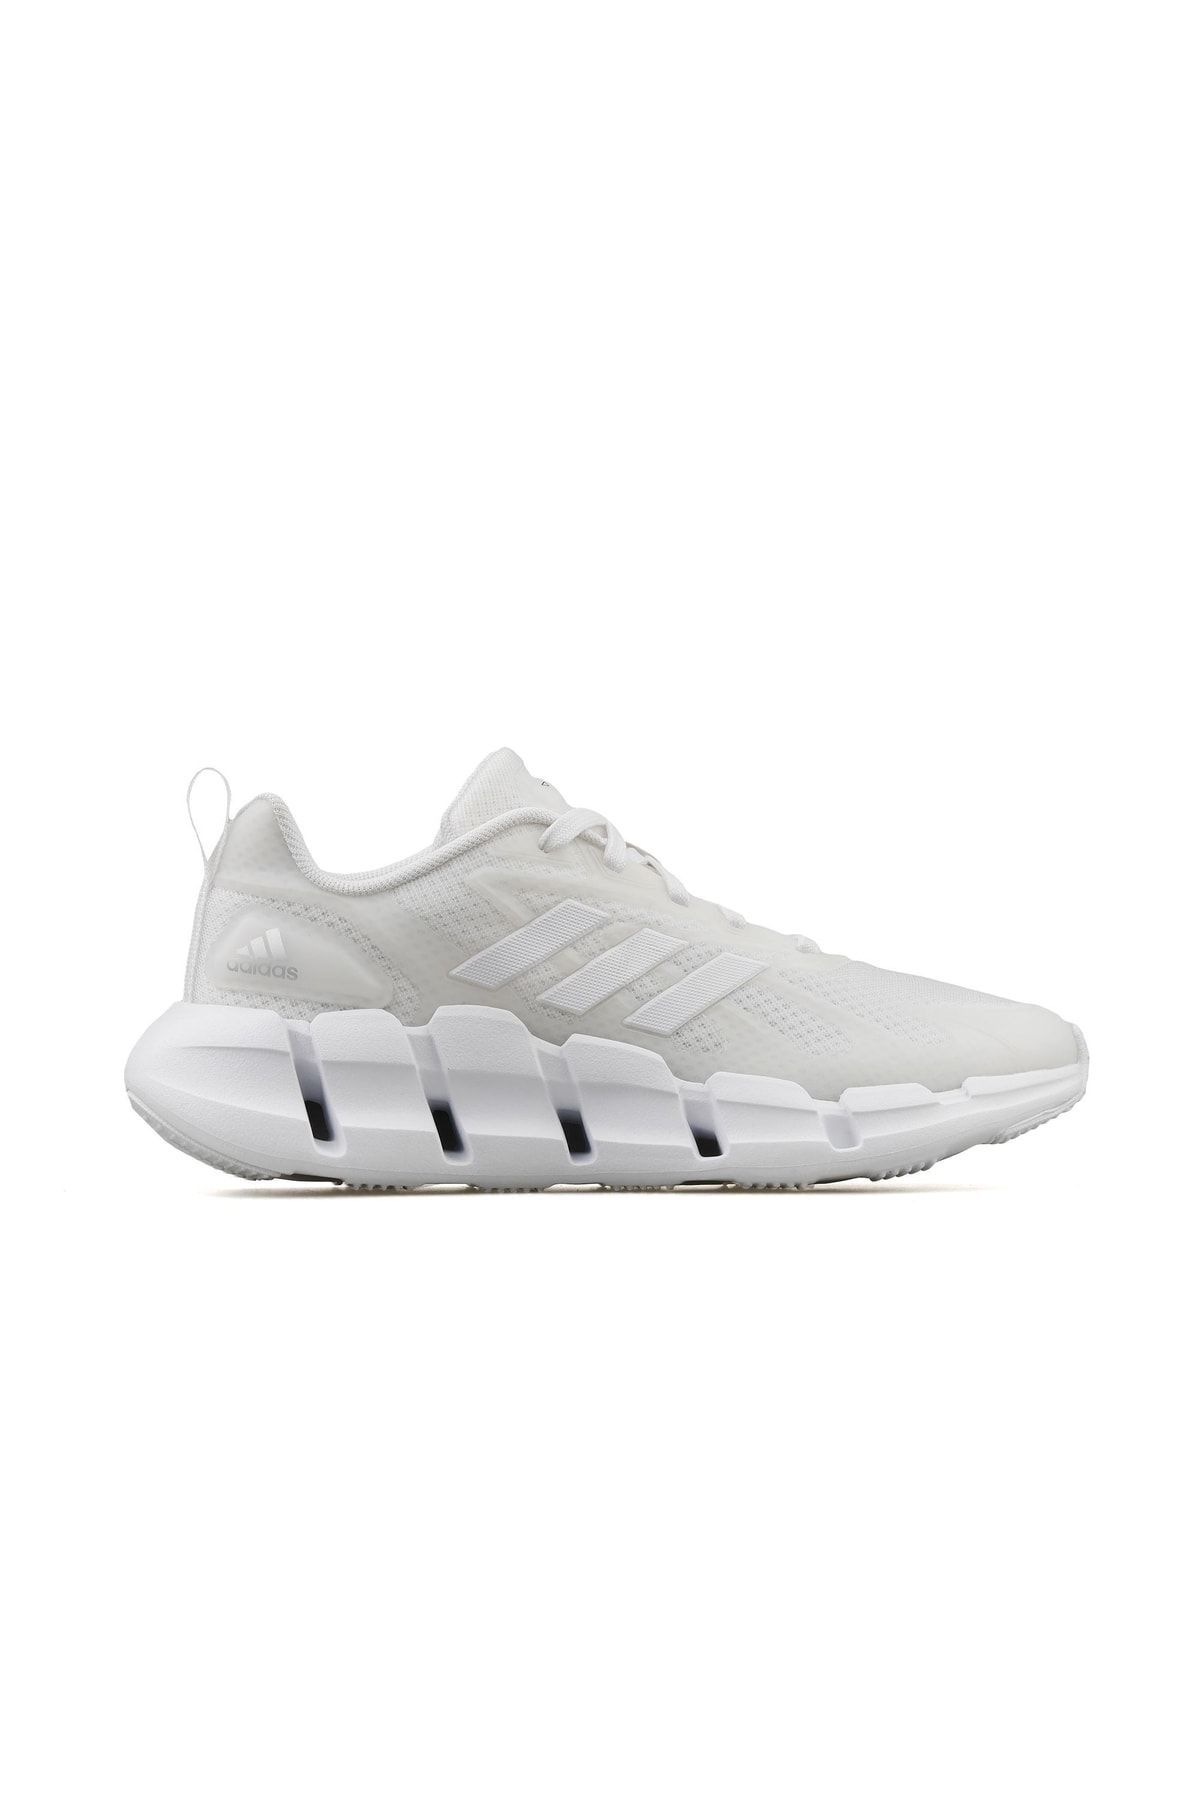 adidas Ventice Climacool Erkek Koşu Ayakkabısı Gz0663 Beyaz